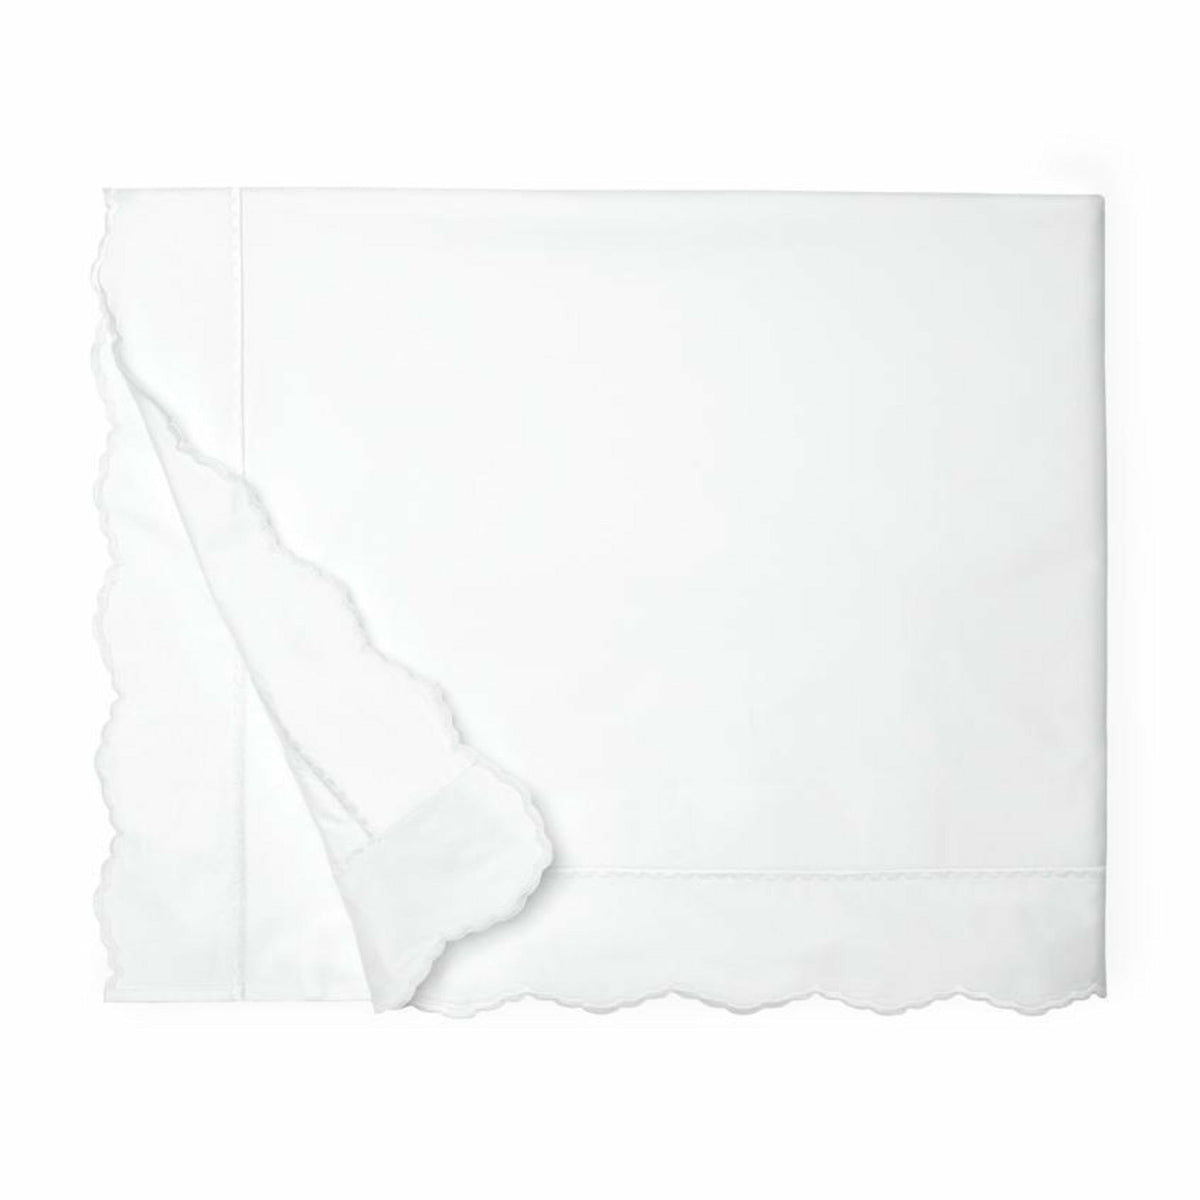 Sferra Pettine Bedding Collection Duvet Cover White/White Fine Linens